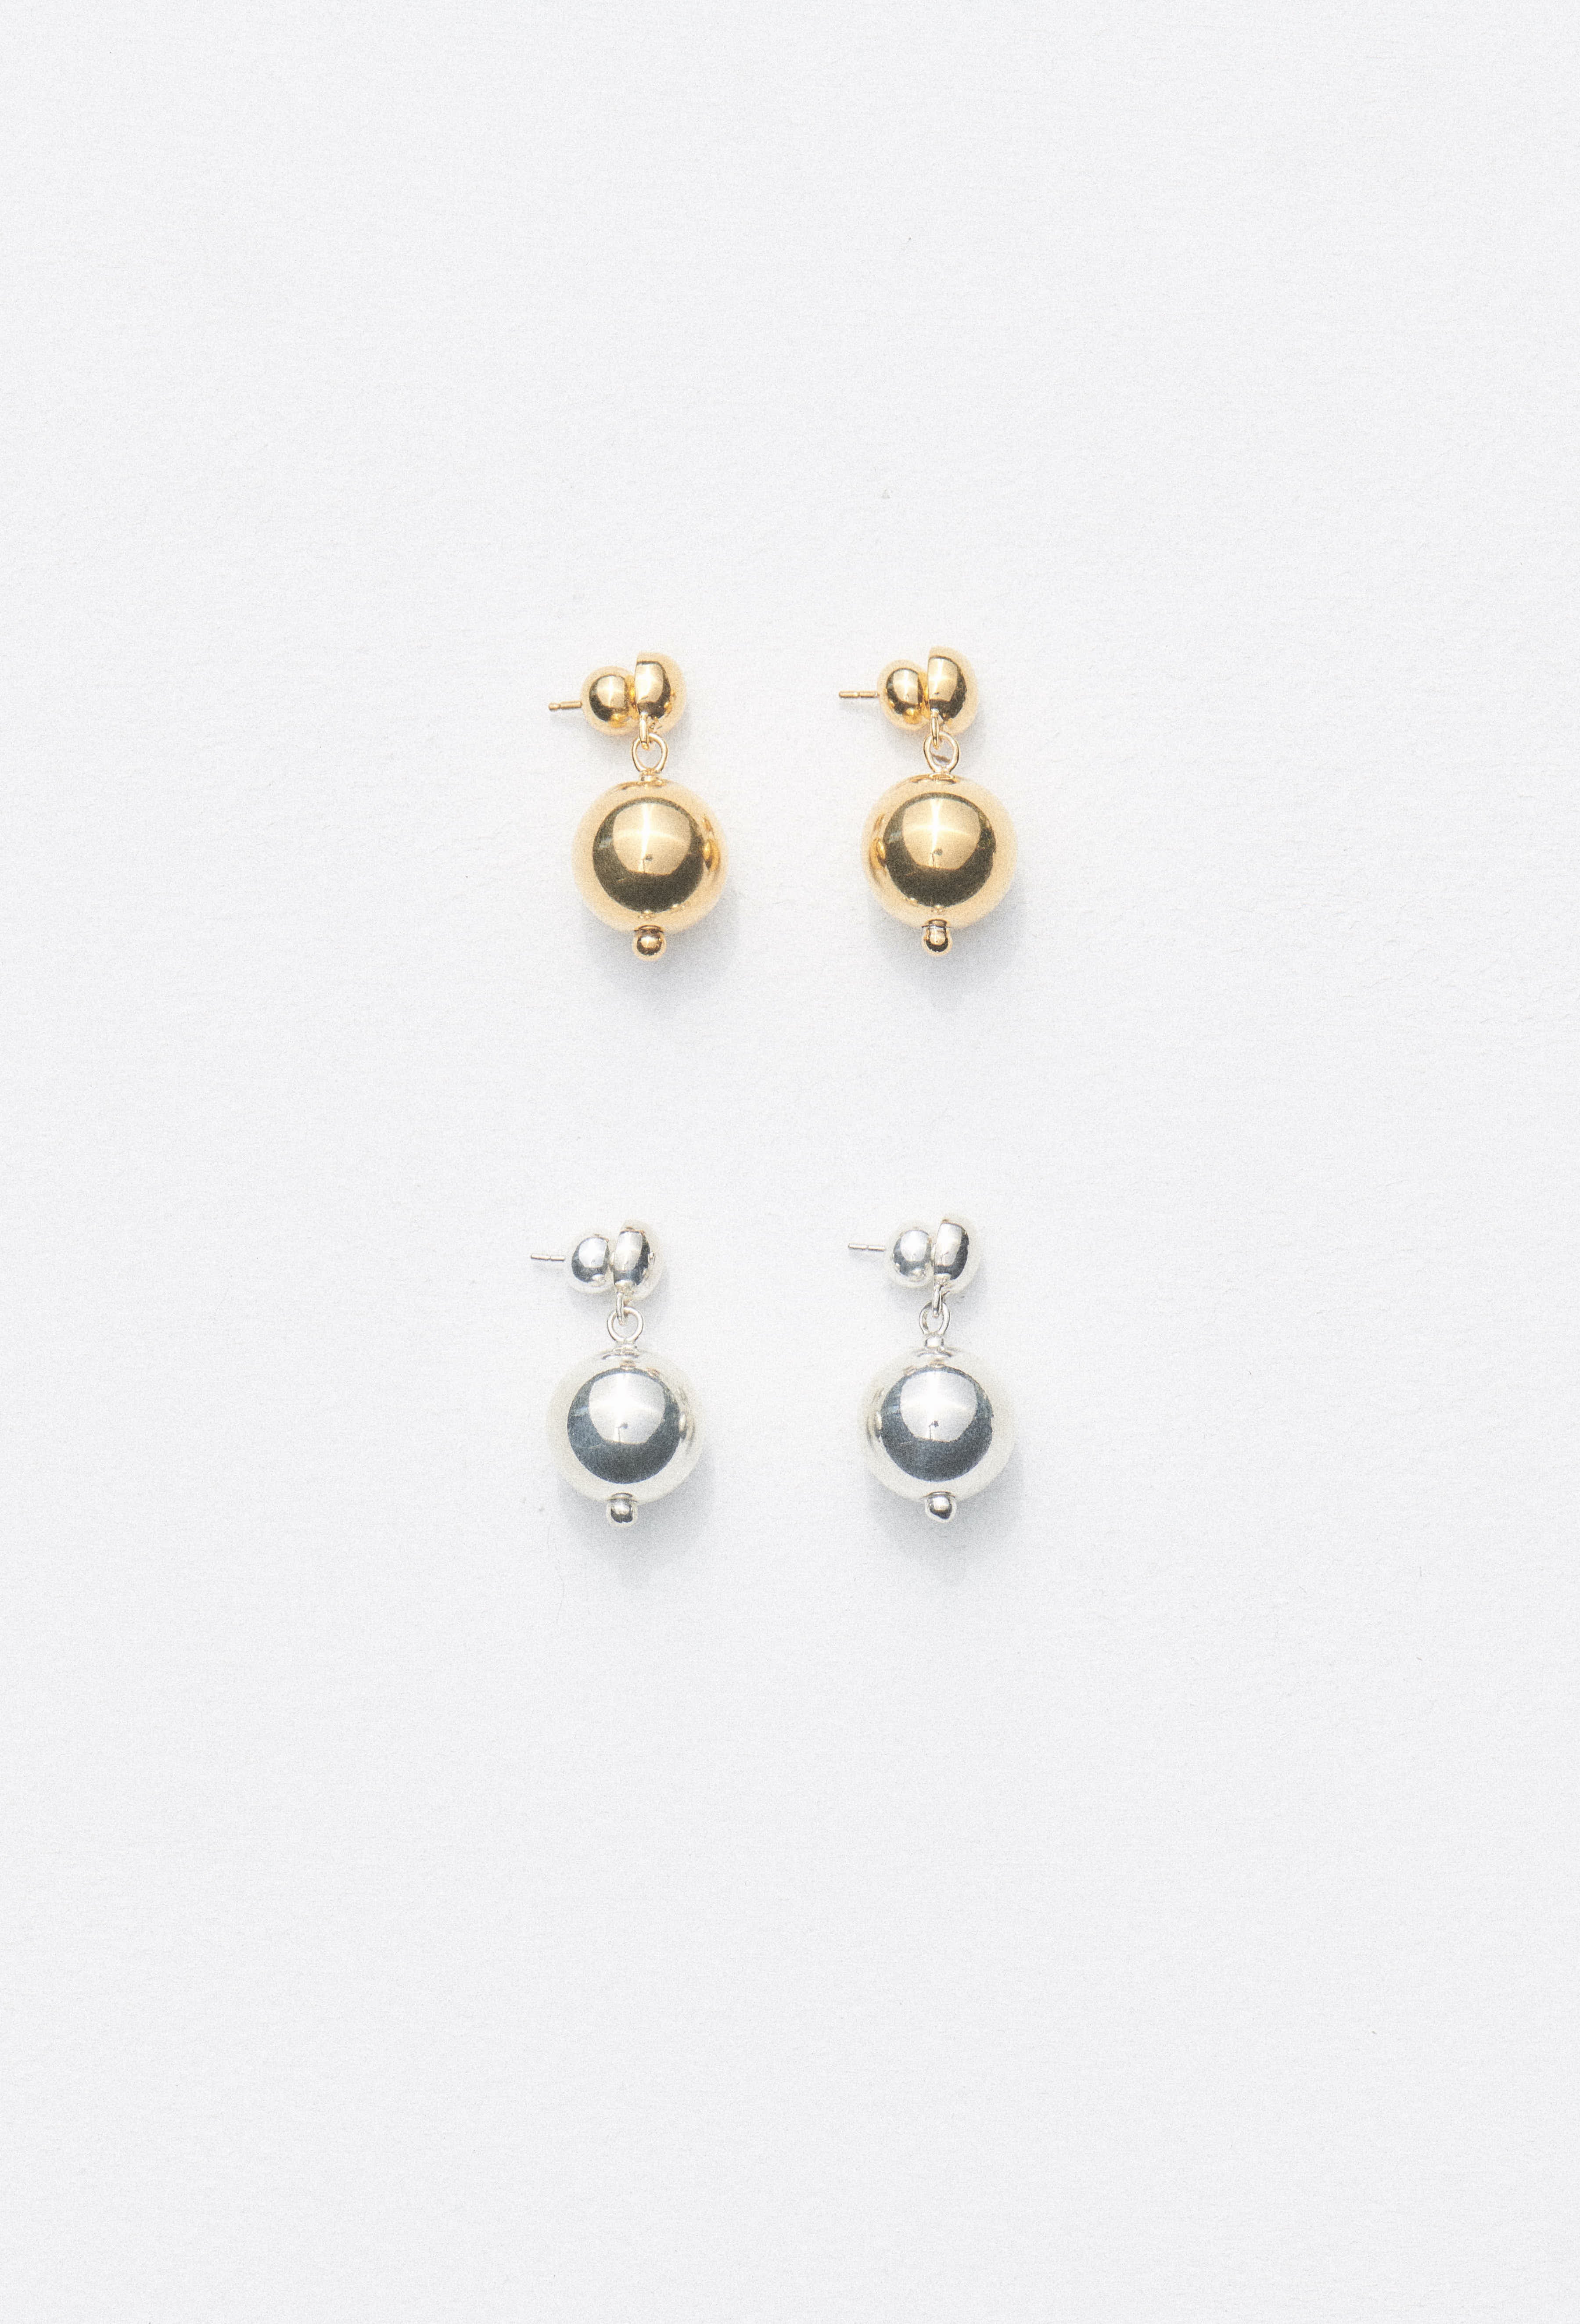 18k Gold Polished Ball Drop Dangle Hook Earrings 95  10 mm  eBay